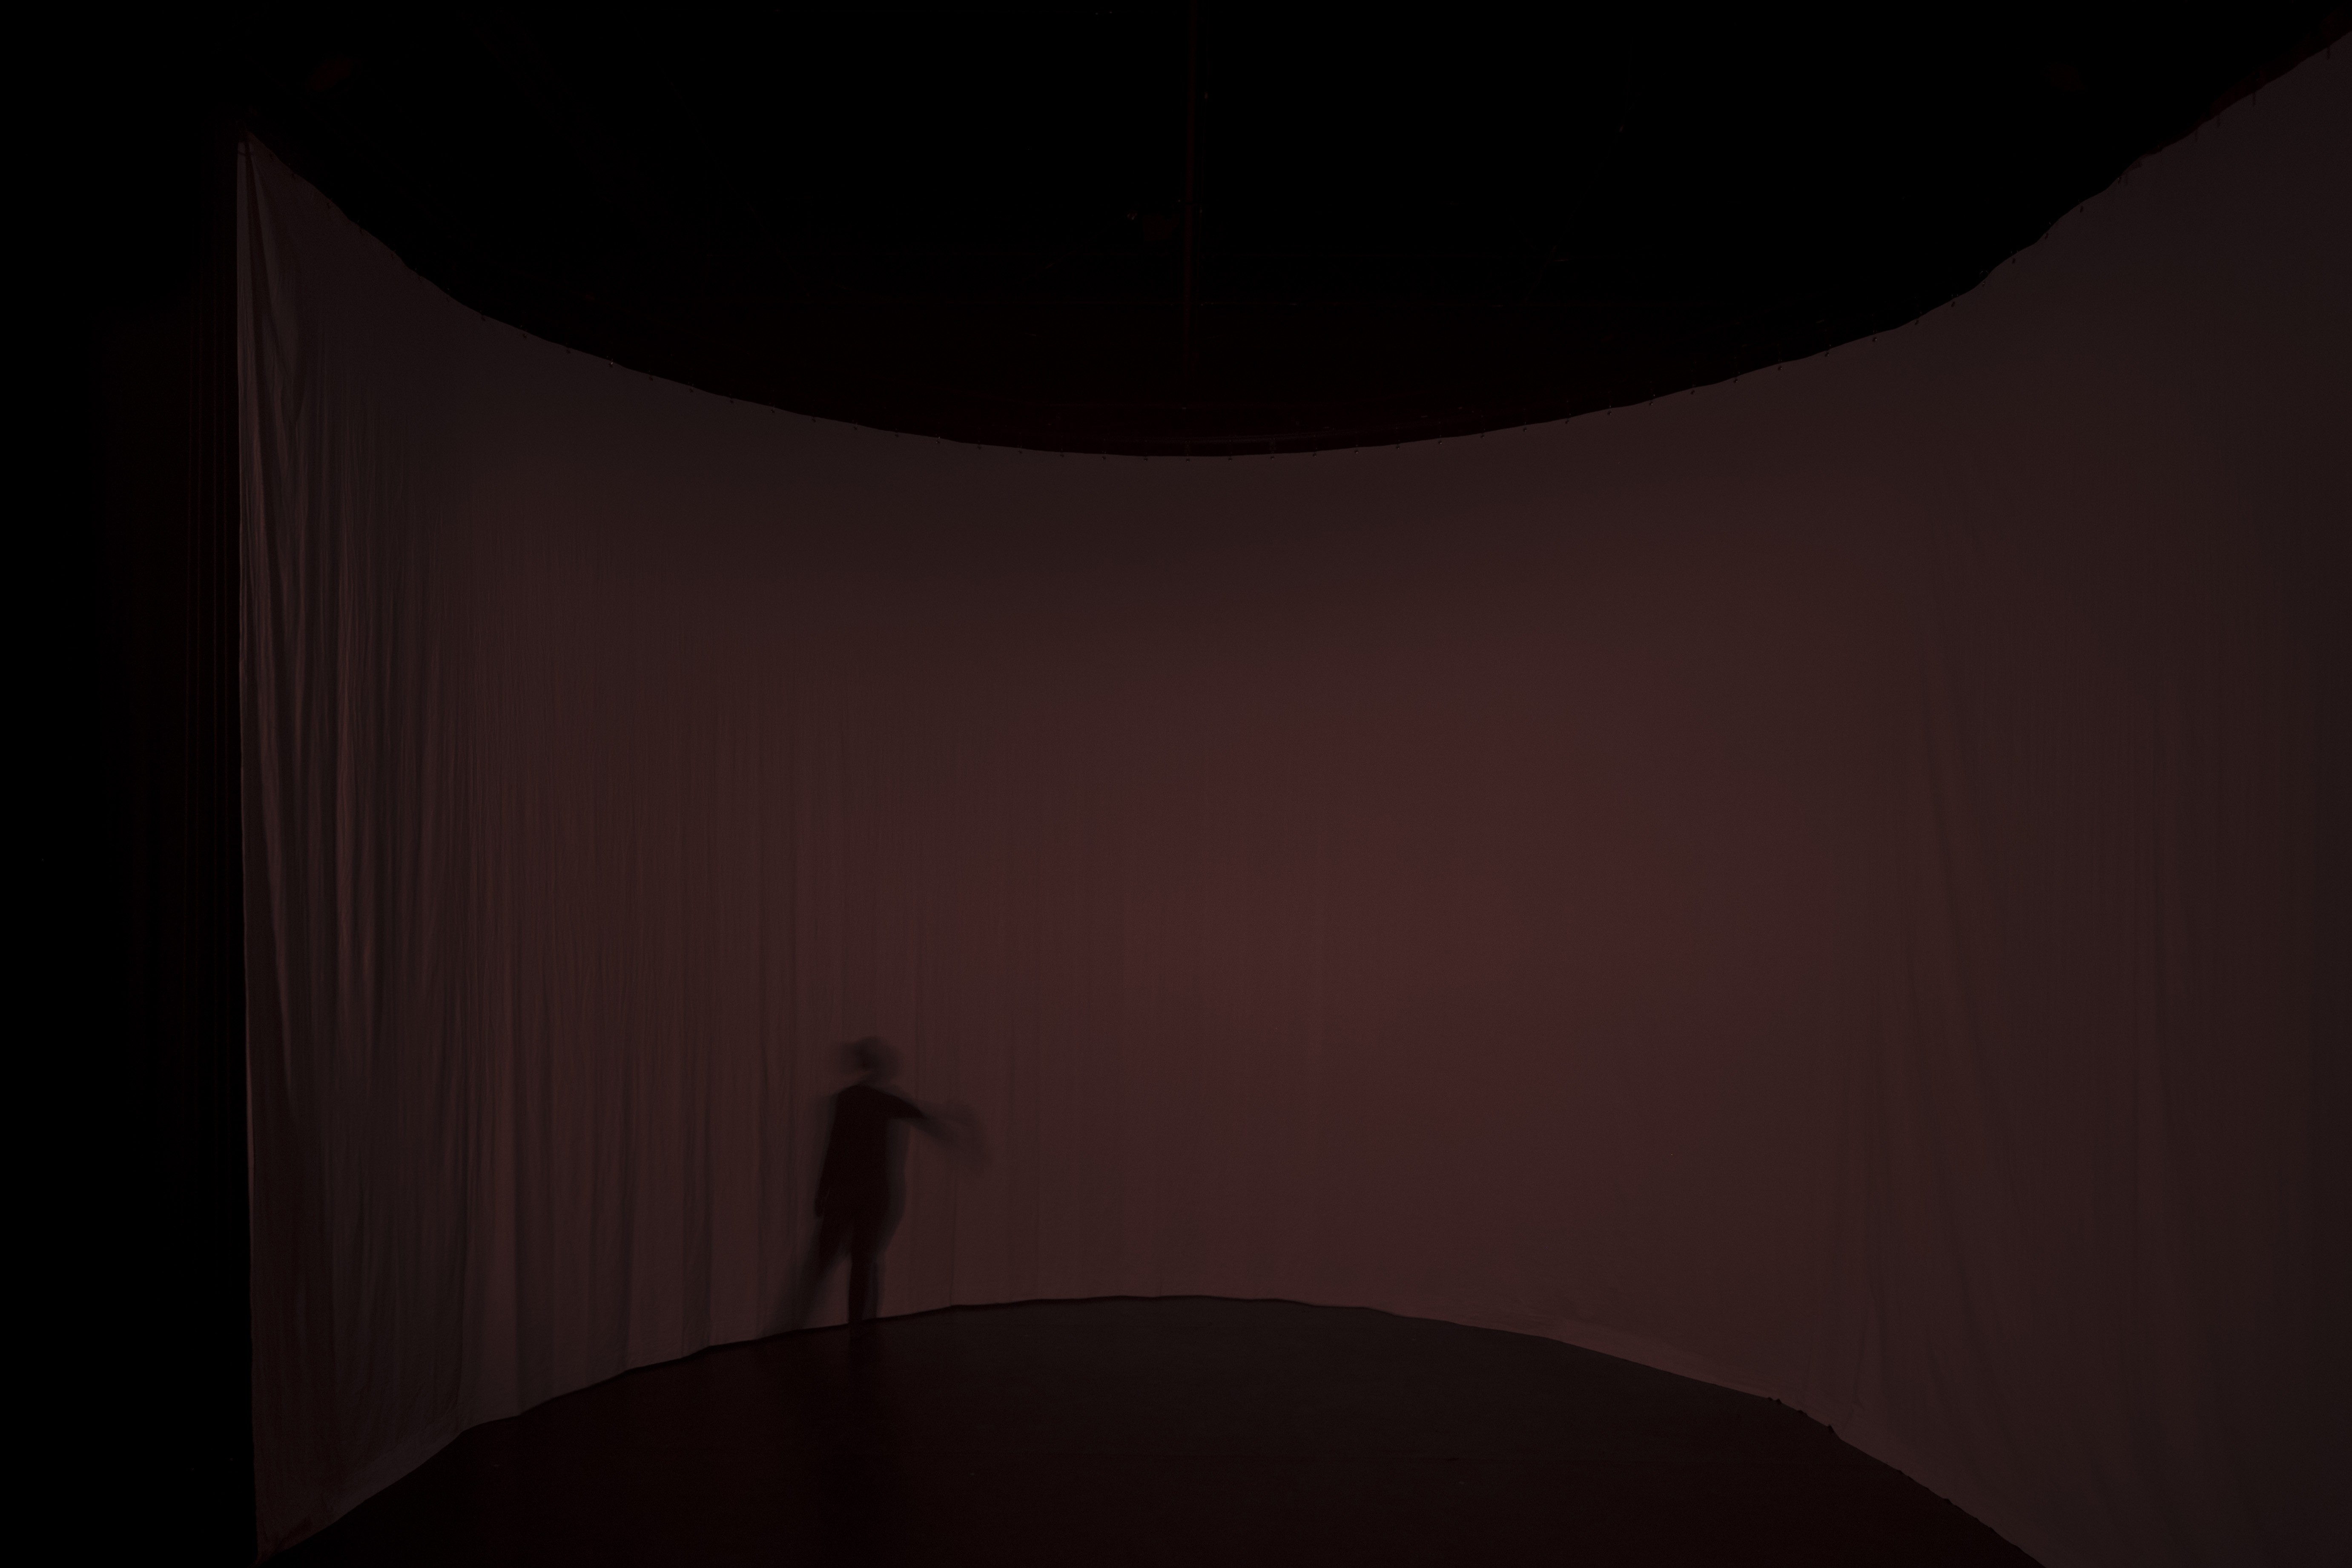 Ein rund gespannter Vorhang in einem roten Dämmerlicht. Ein Schatten einer Person in Bewegung zeichnet sich auf dem Vorhang ab.